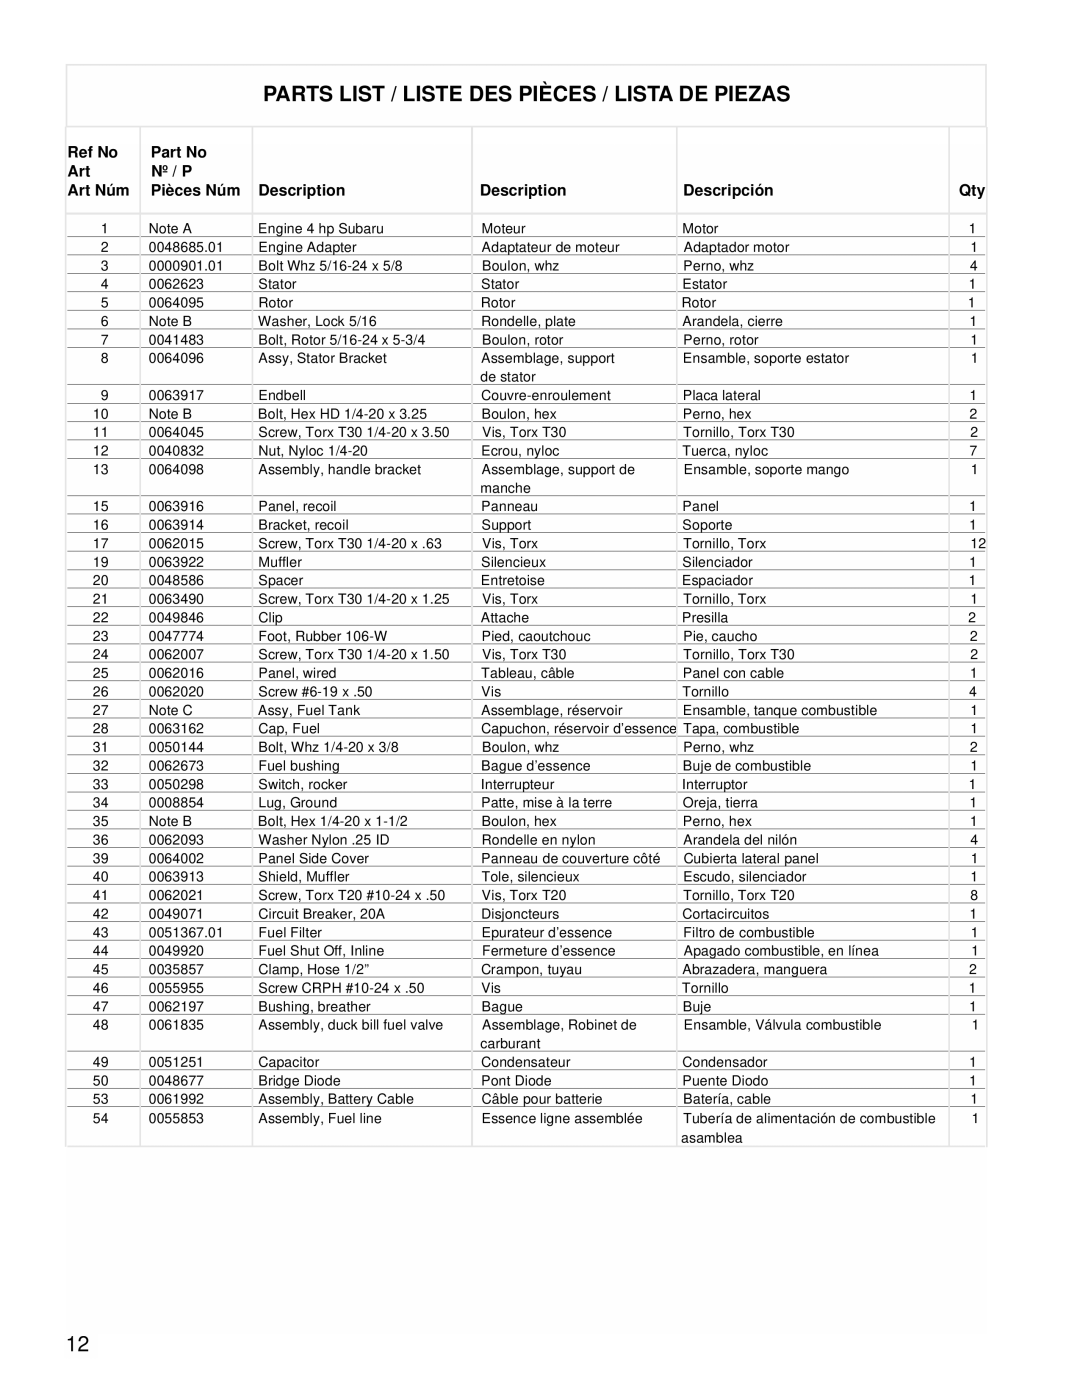 Powermate PMC431800.01 manual Parts List / Liste Des Pièces / Lista De Piezas 